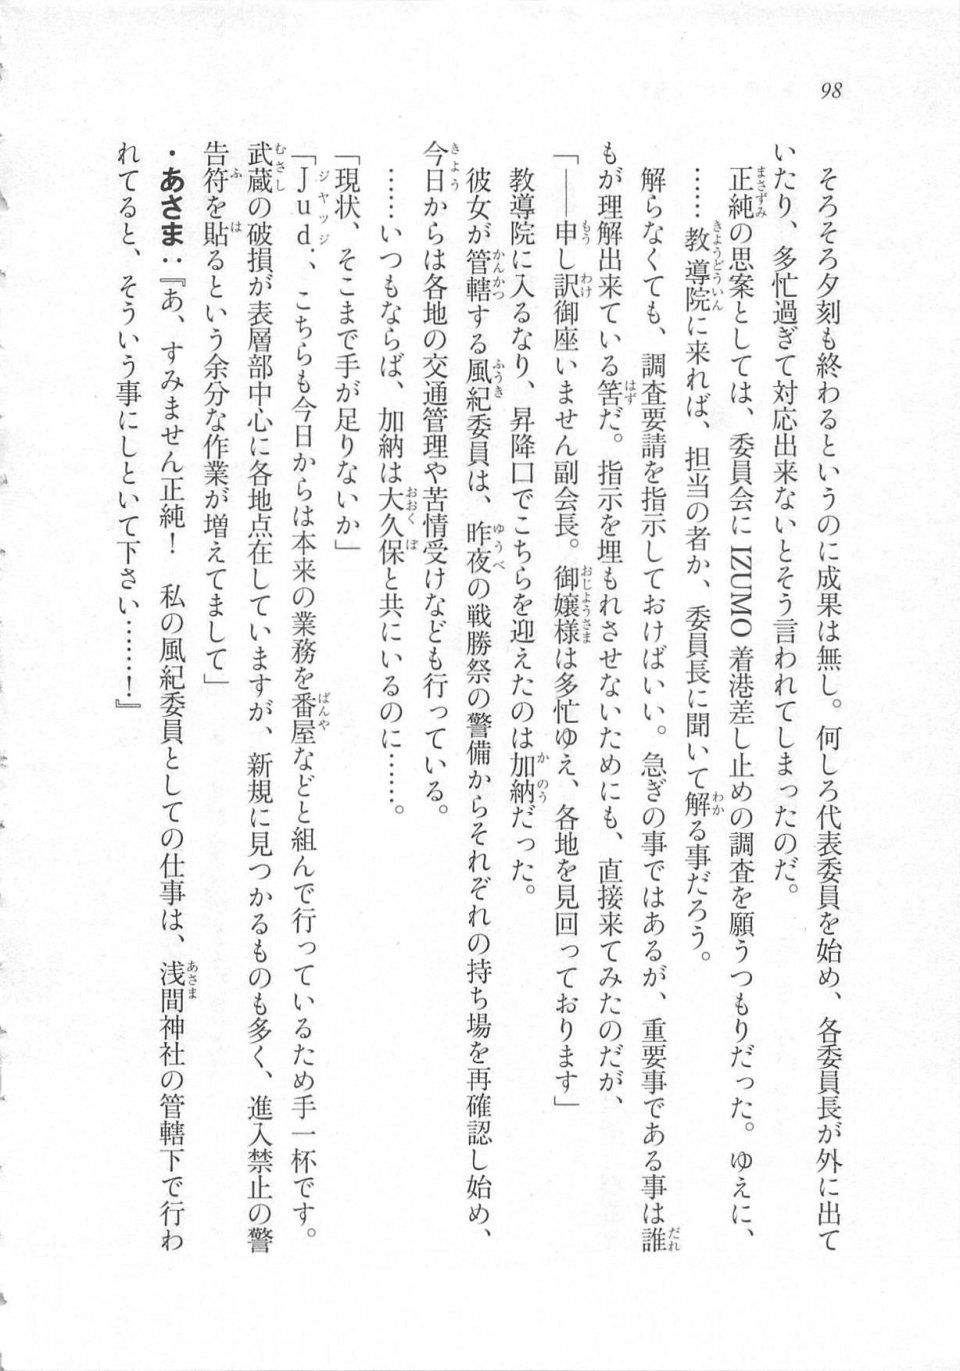 Kyoukai Senjou no Horizon LN Sidestory Vol 3 - Photo #102